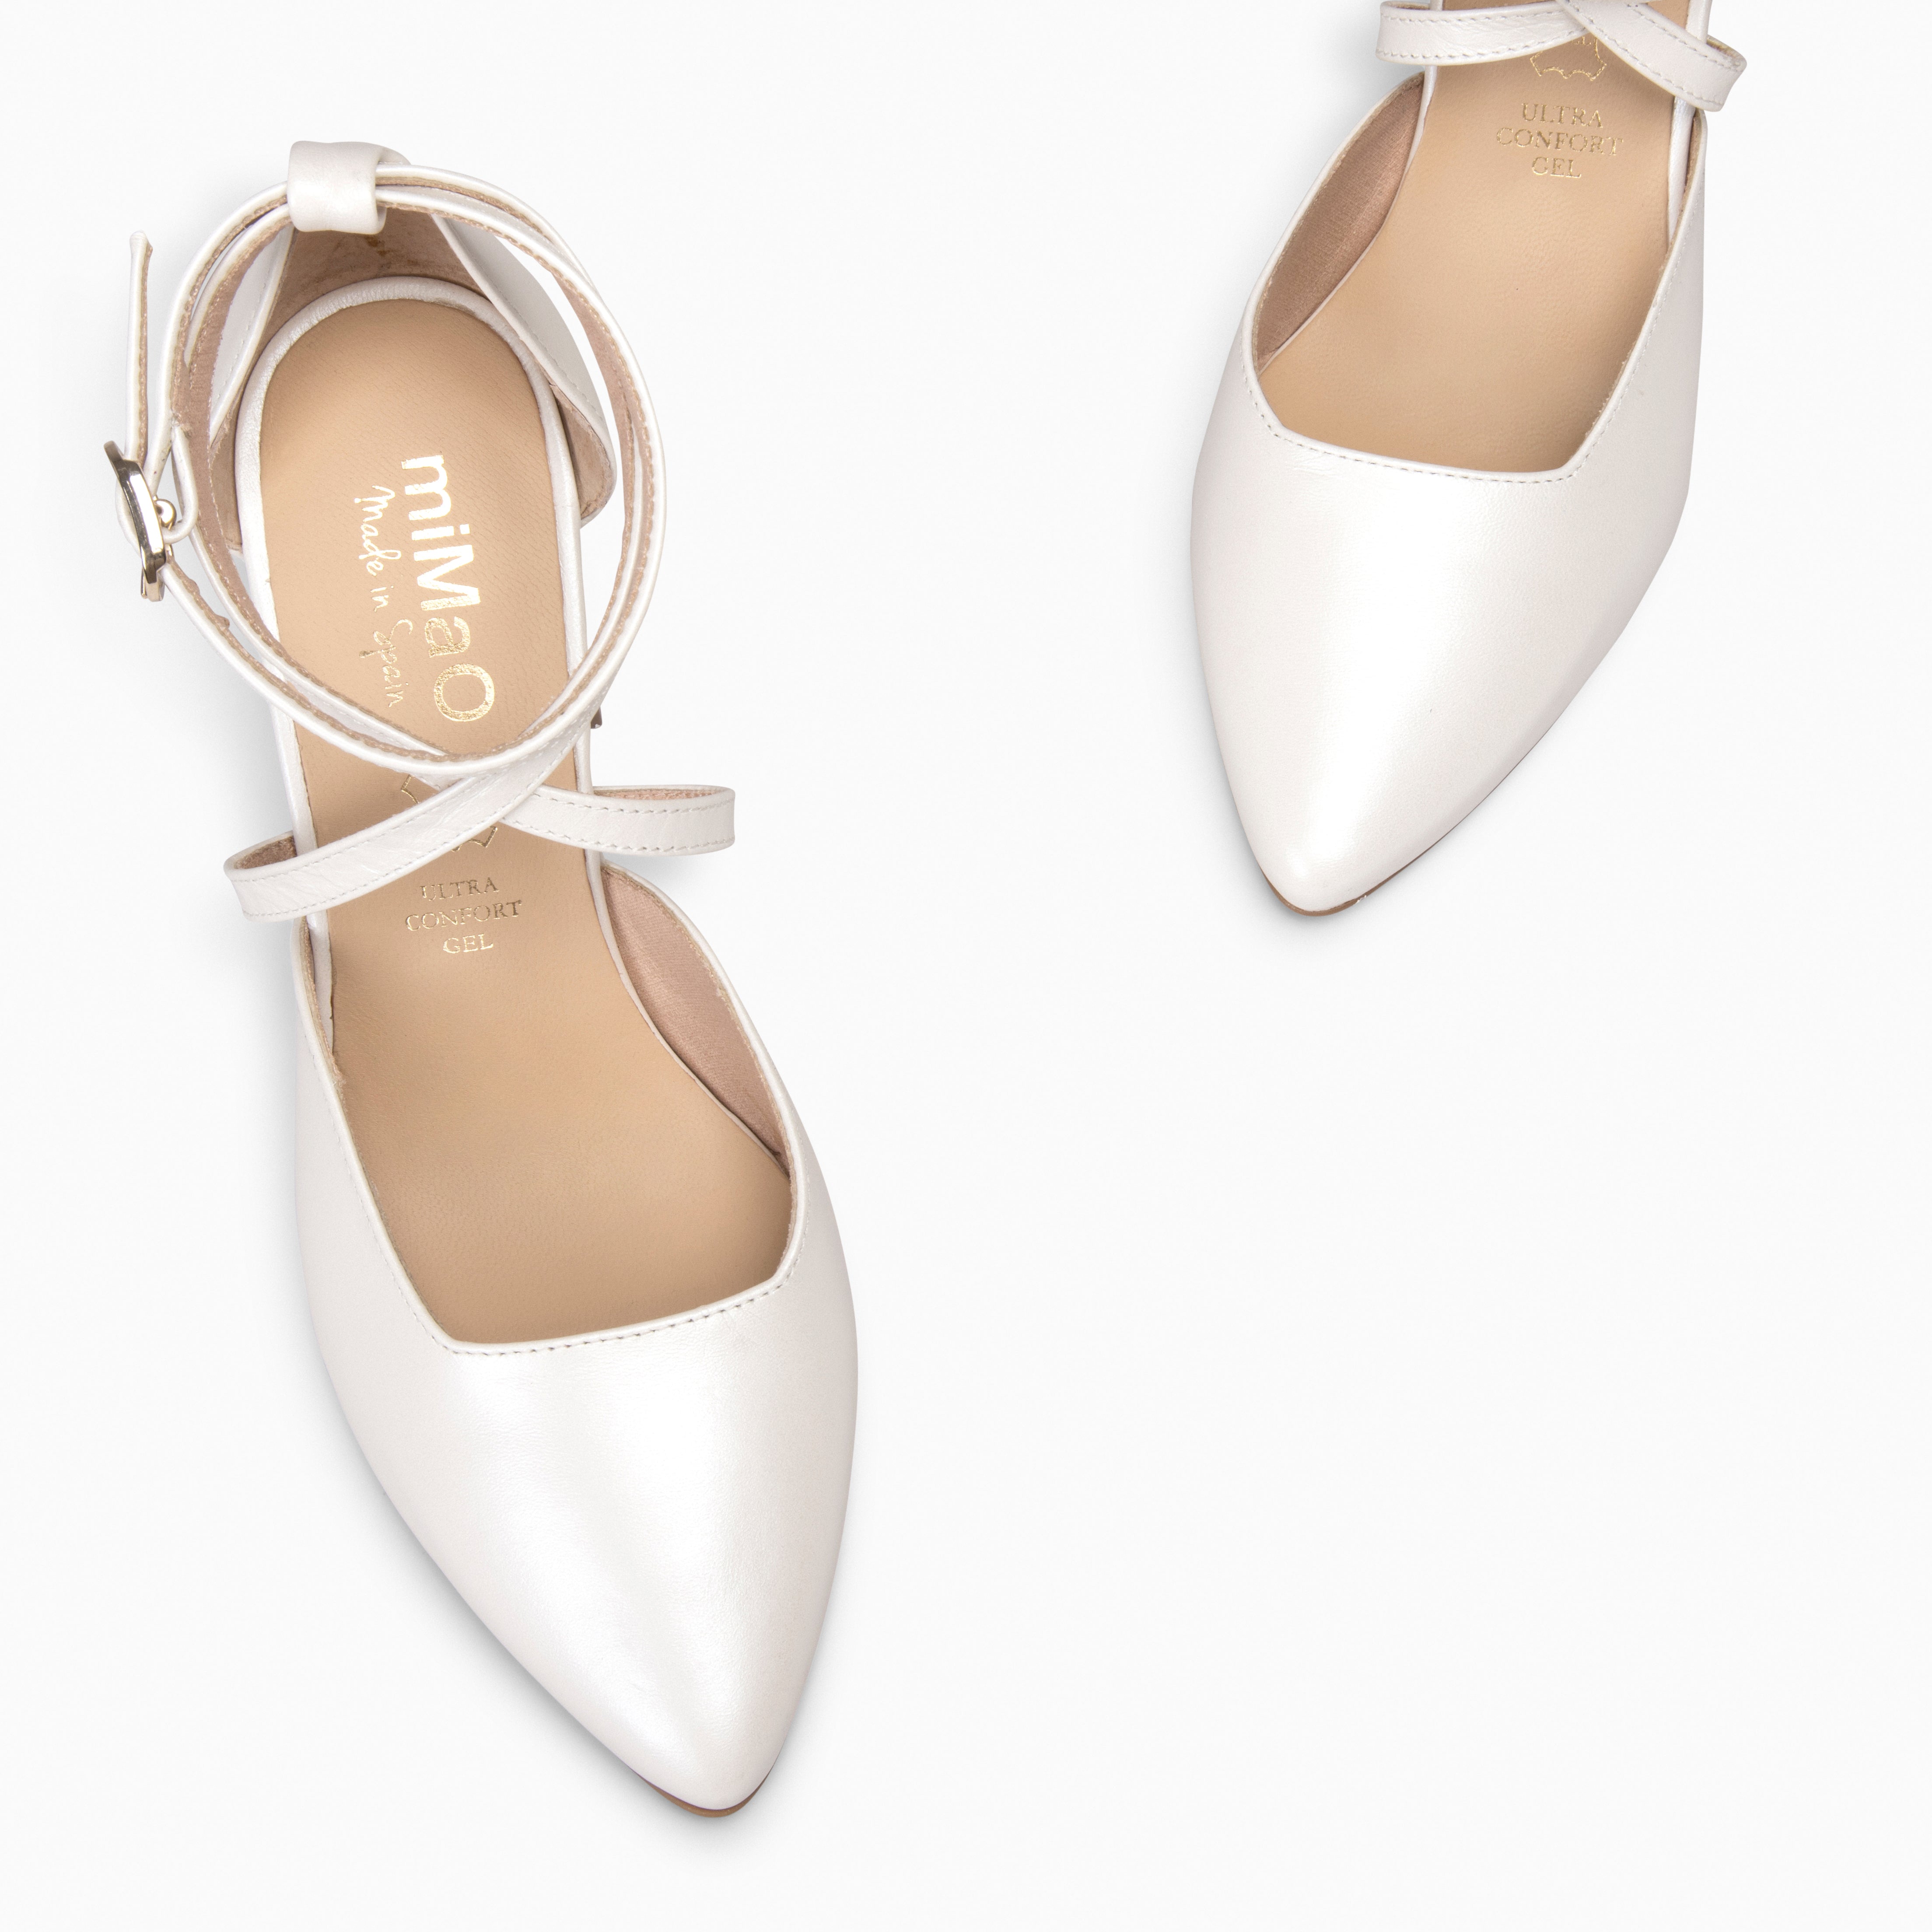 ARIEL – PEARL Wide heel shoe